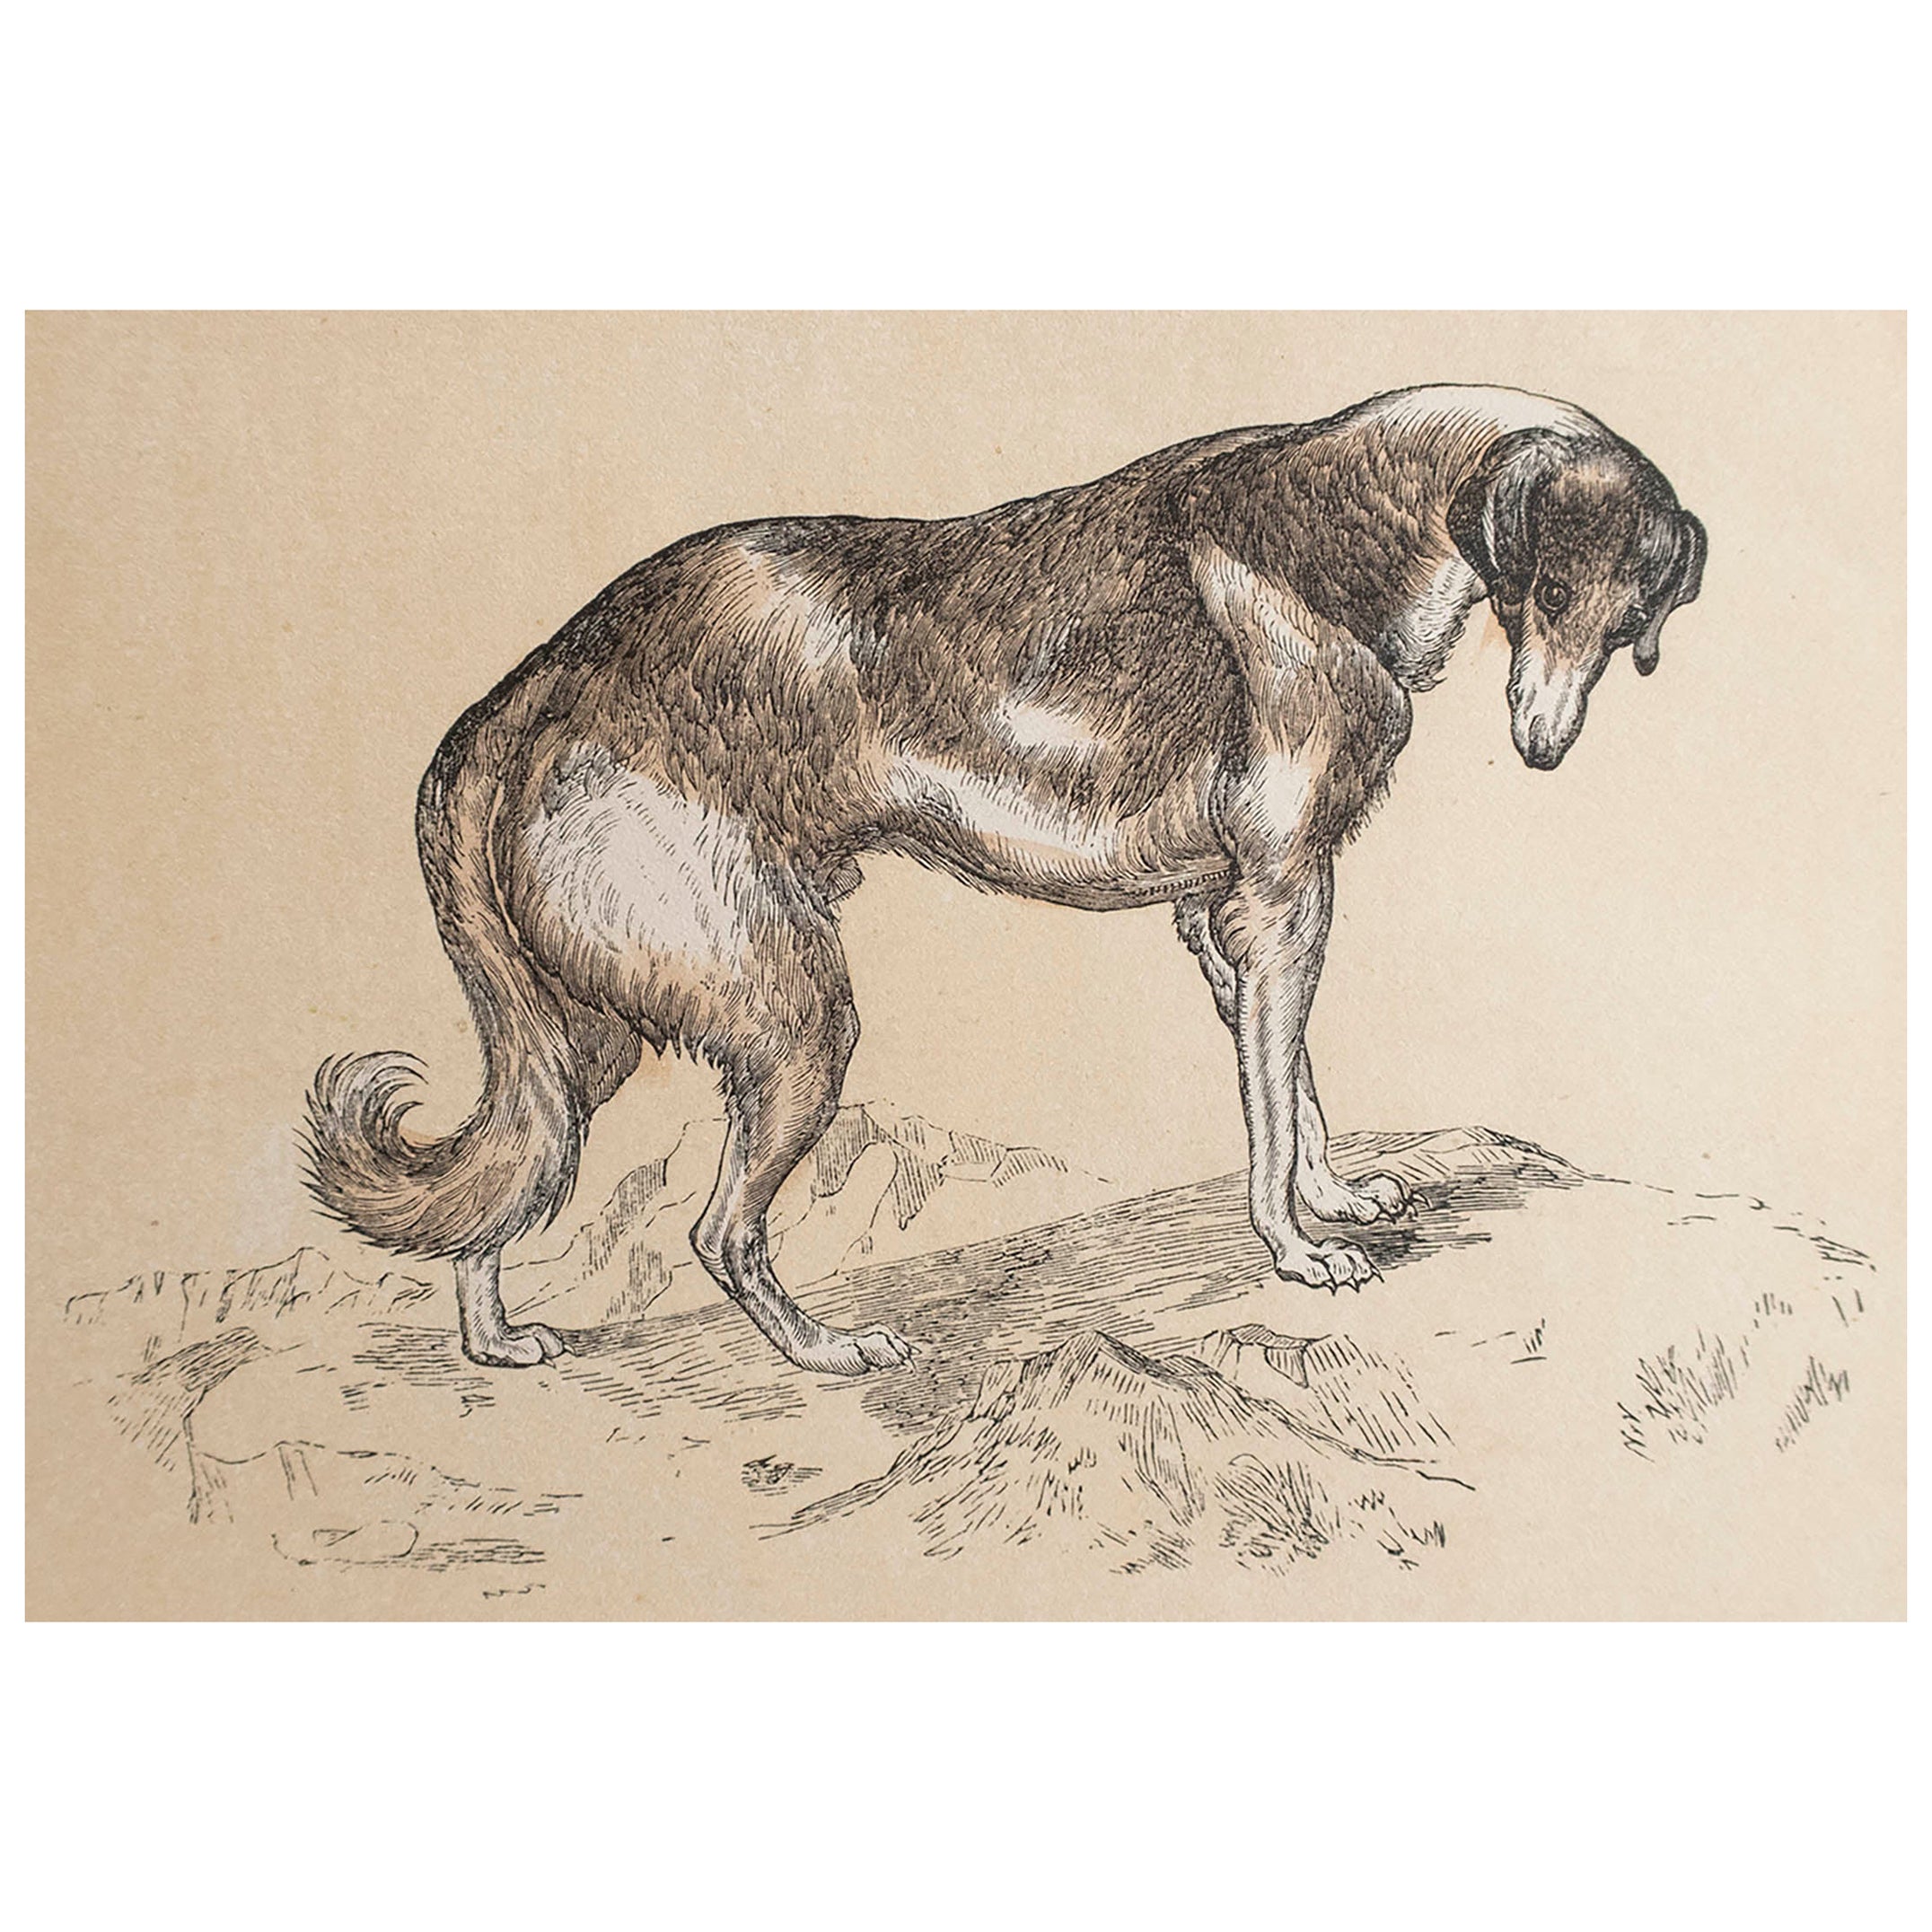  Original Antique Print of A Greyhound, circa 1850